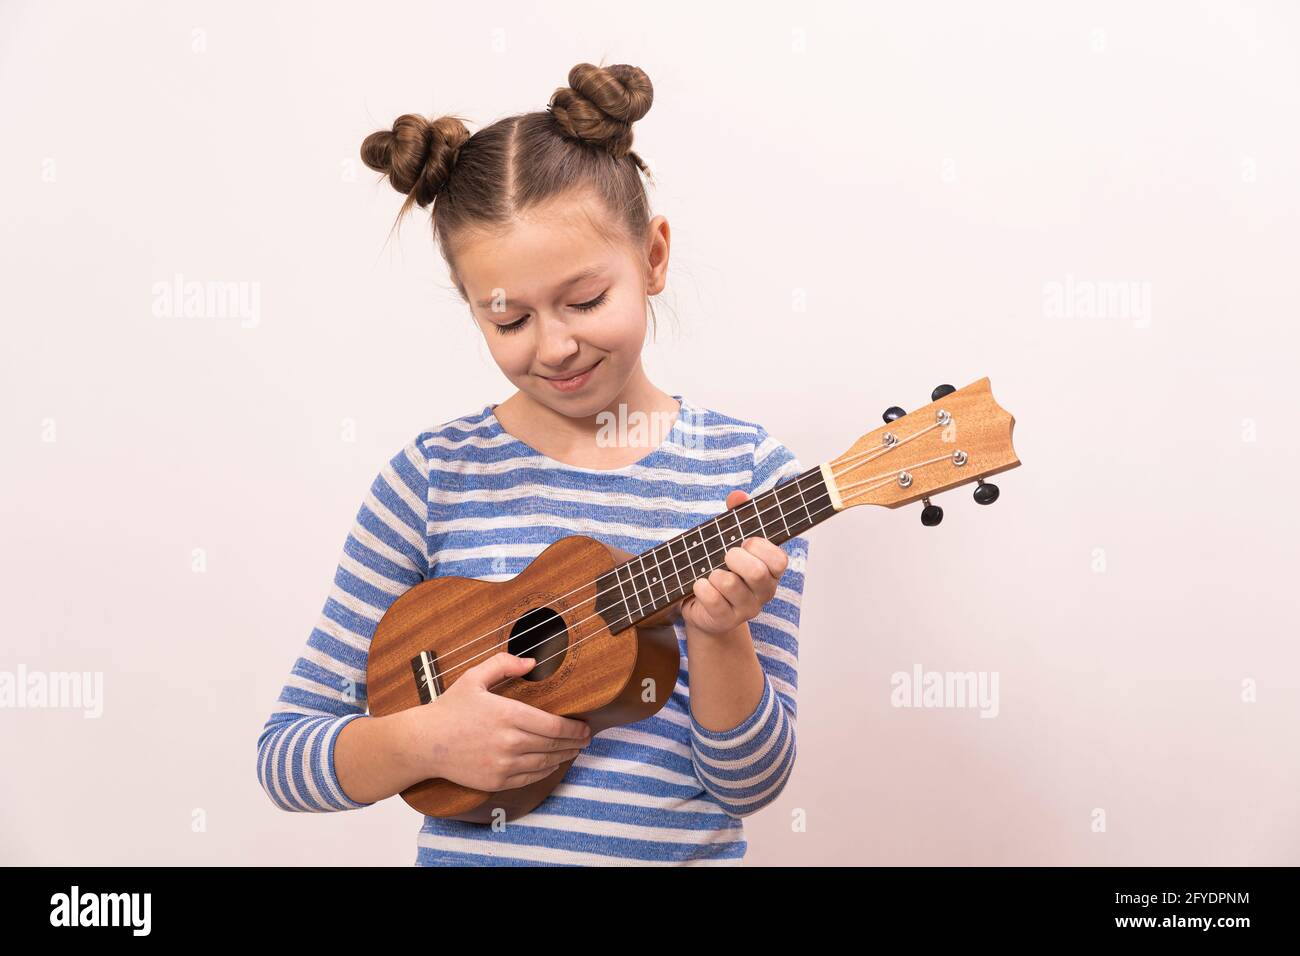 La ragazza canta e suona l'ukulele. Il bambino ride, si pone per la macchina fotografica e gode la musica. Imparare a giocare ukuleles. Foto Stock